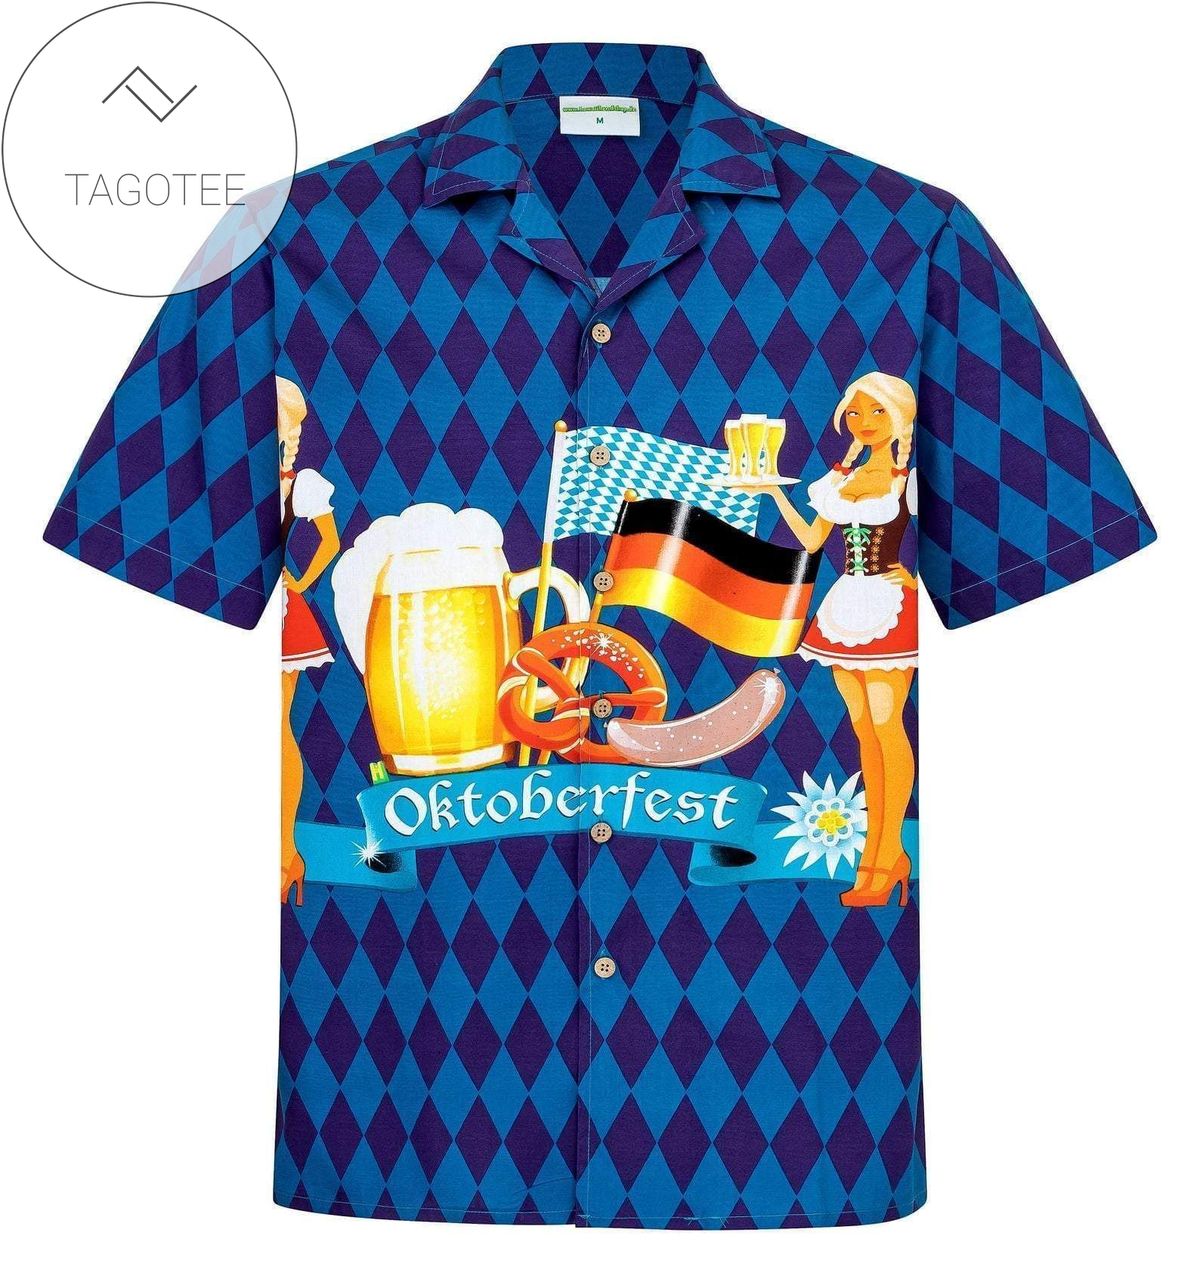 Find Copy Of Germany Hawaiian Shirts – Lk350